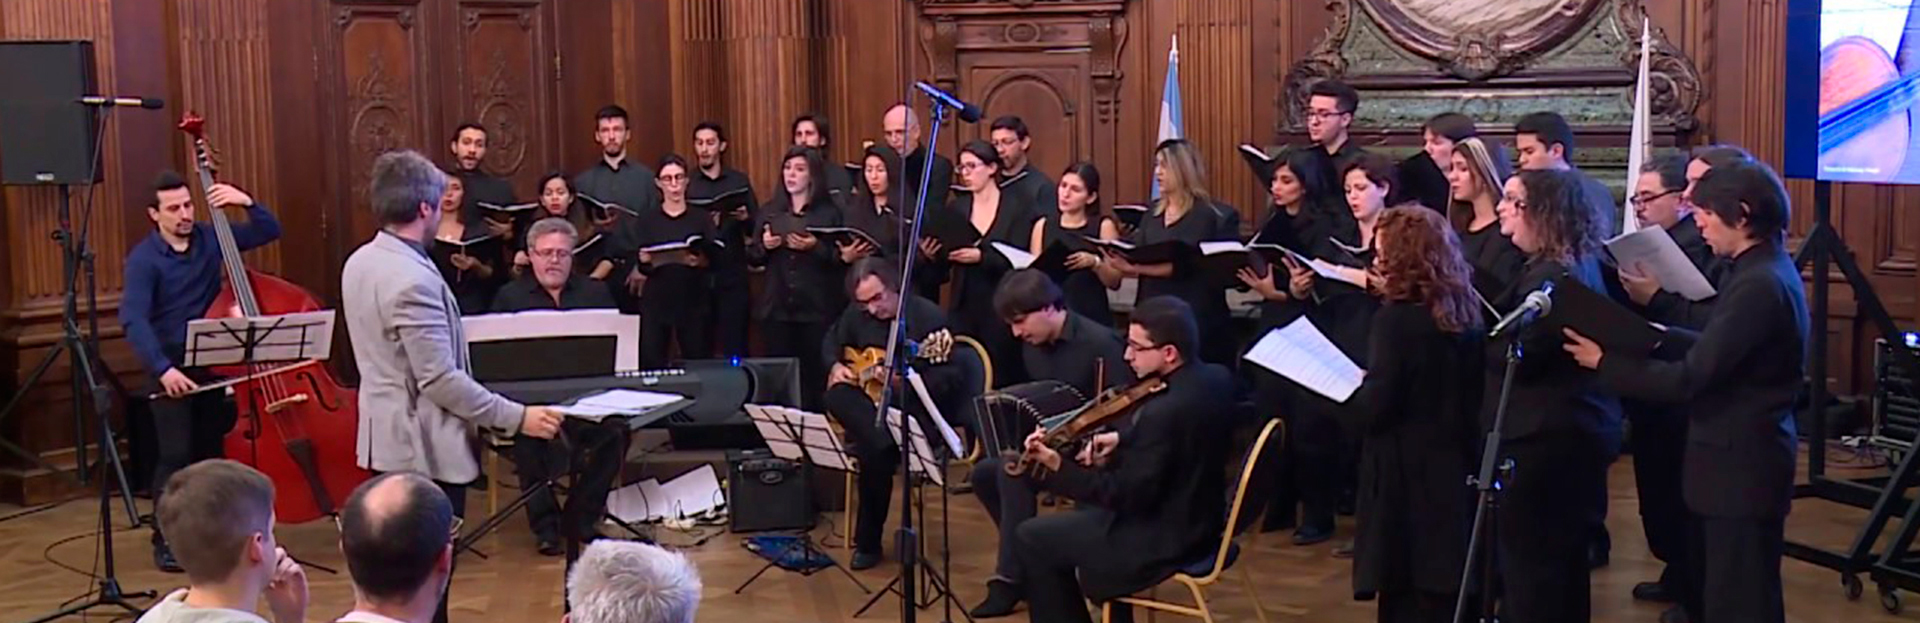 Coro Carlos López Buchardo en Concierto